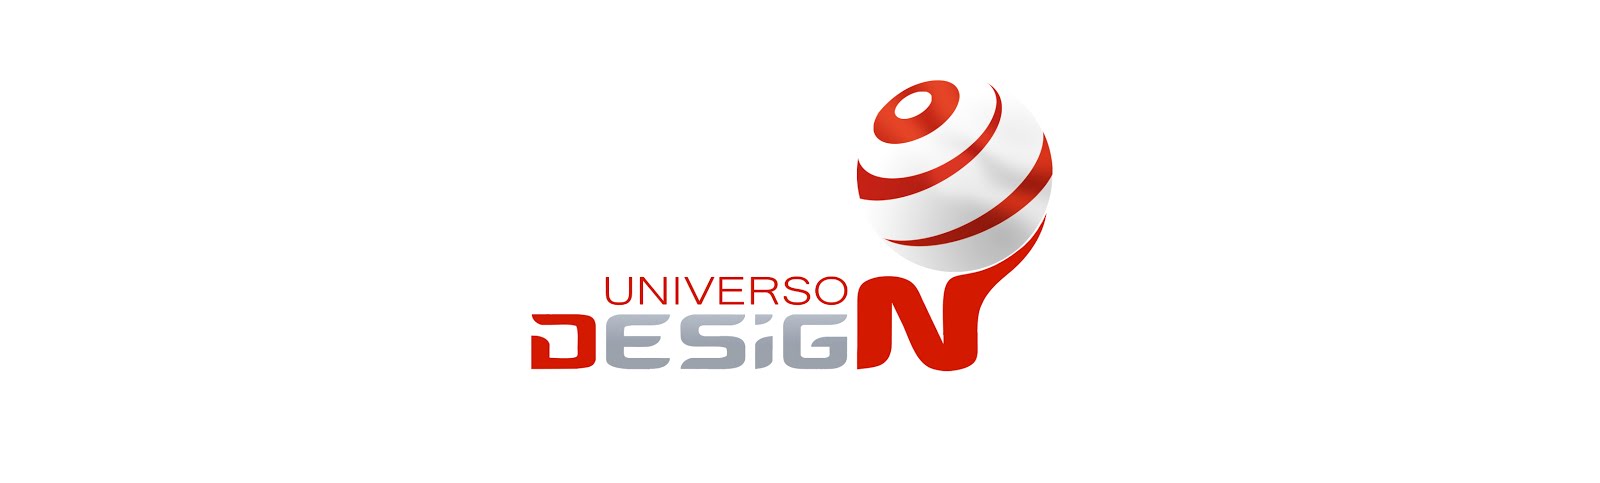 Universo Design